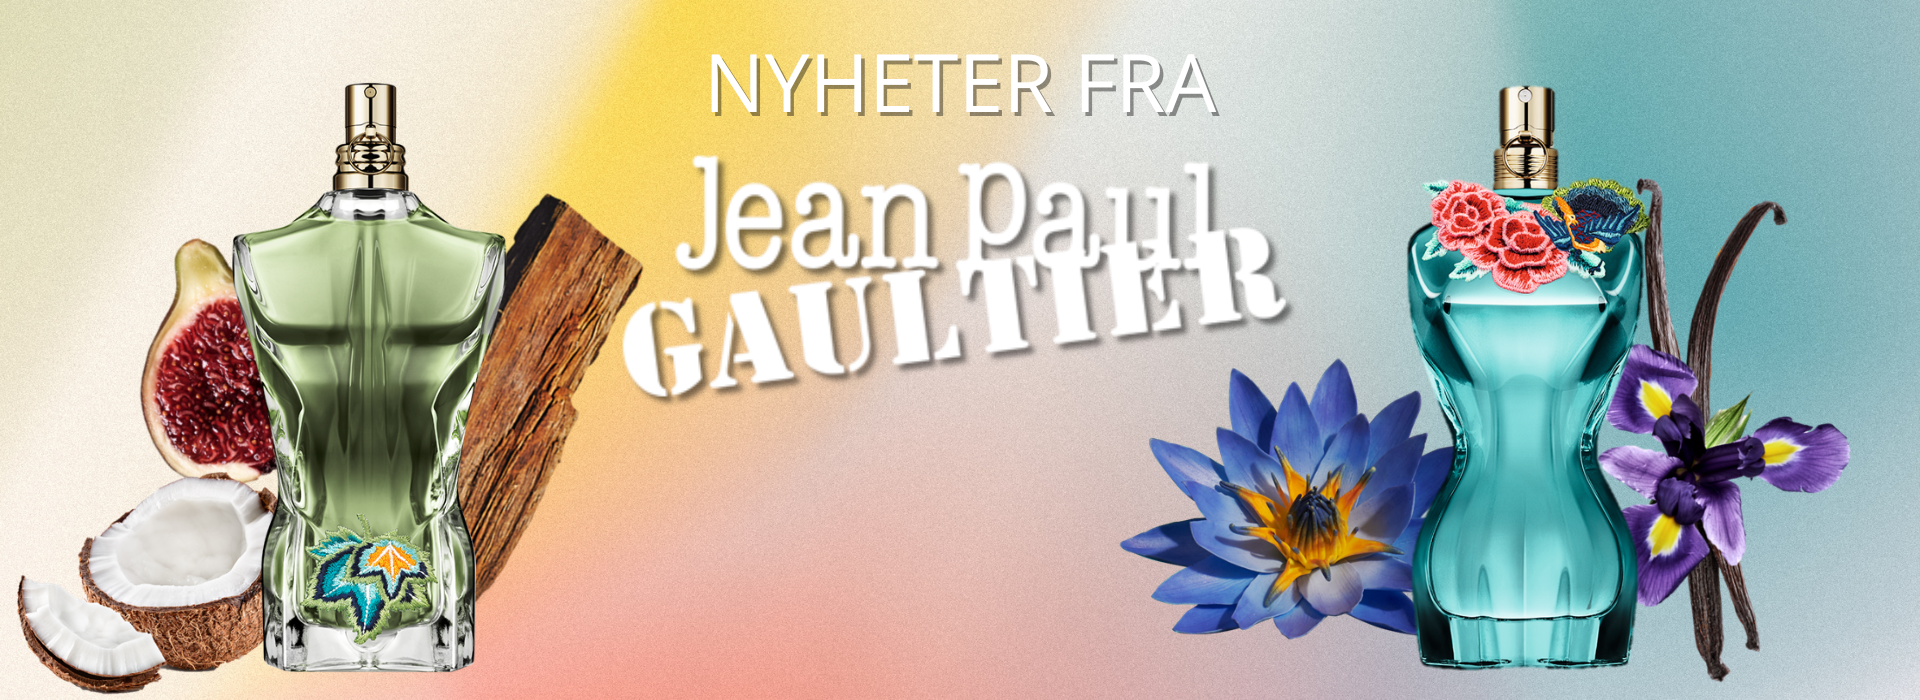 Oppdag nyheter fra Jean Paul Gaultier 